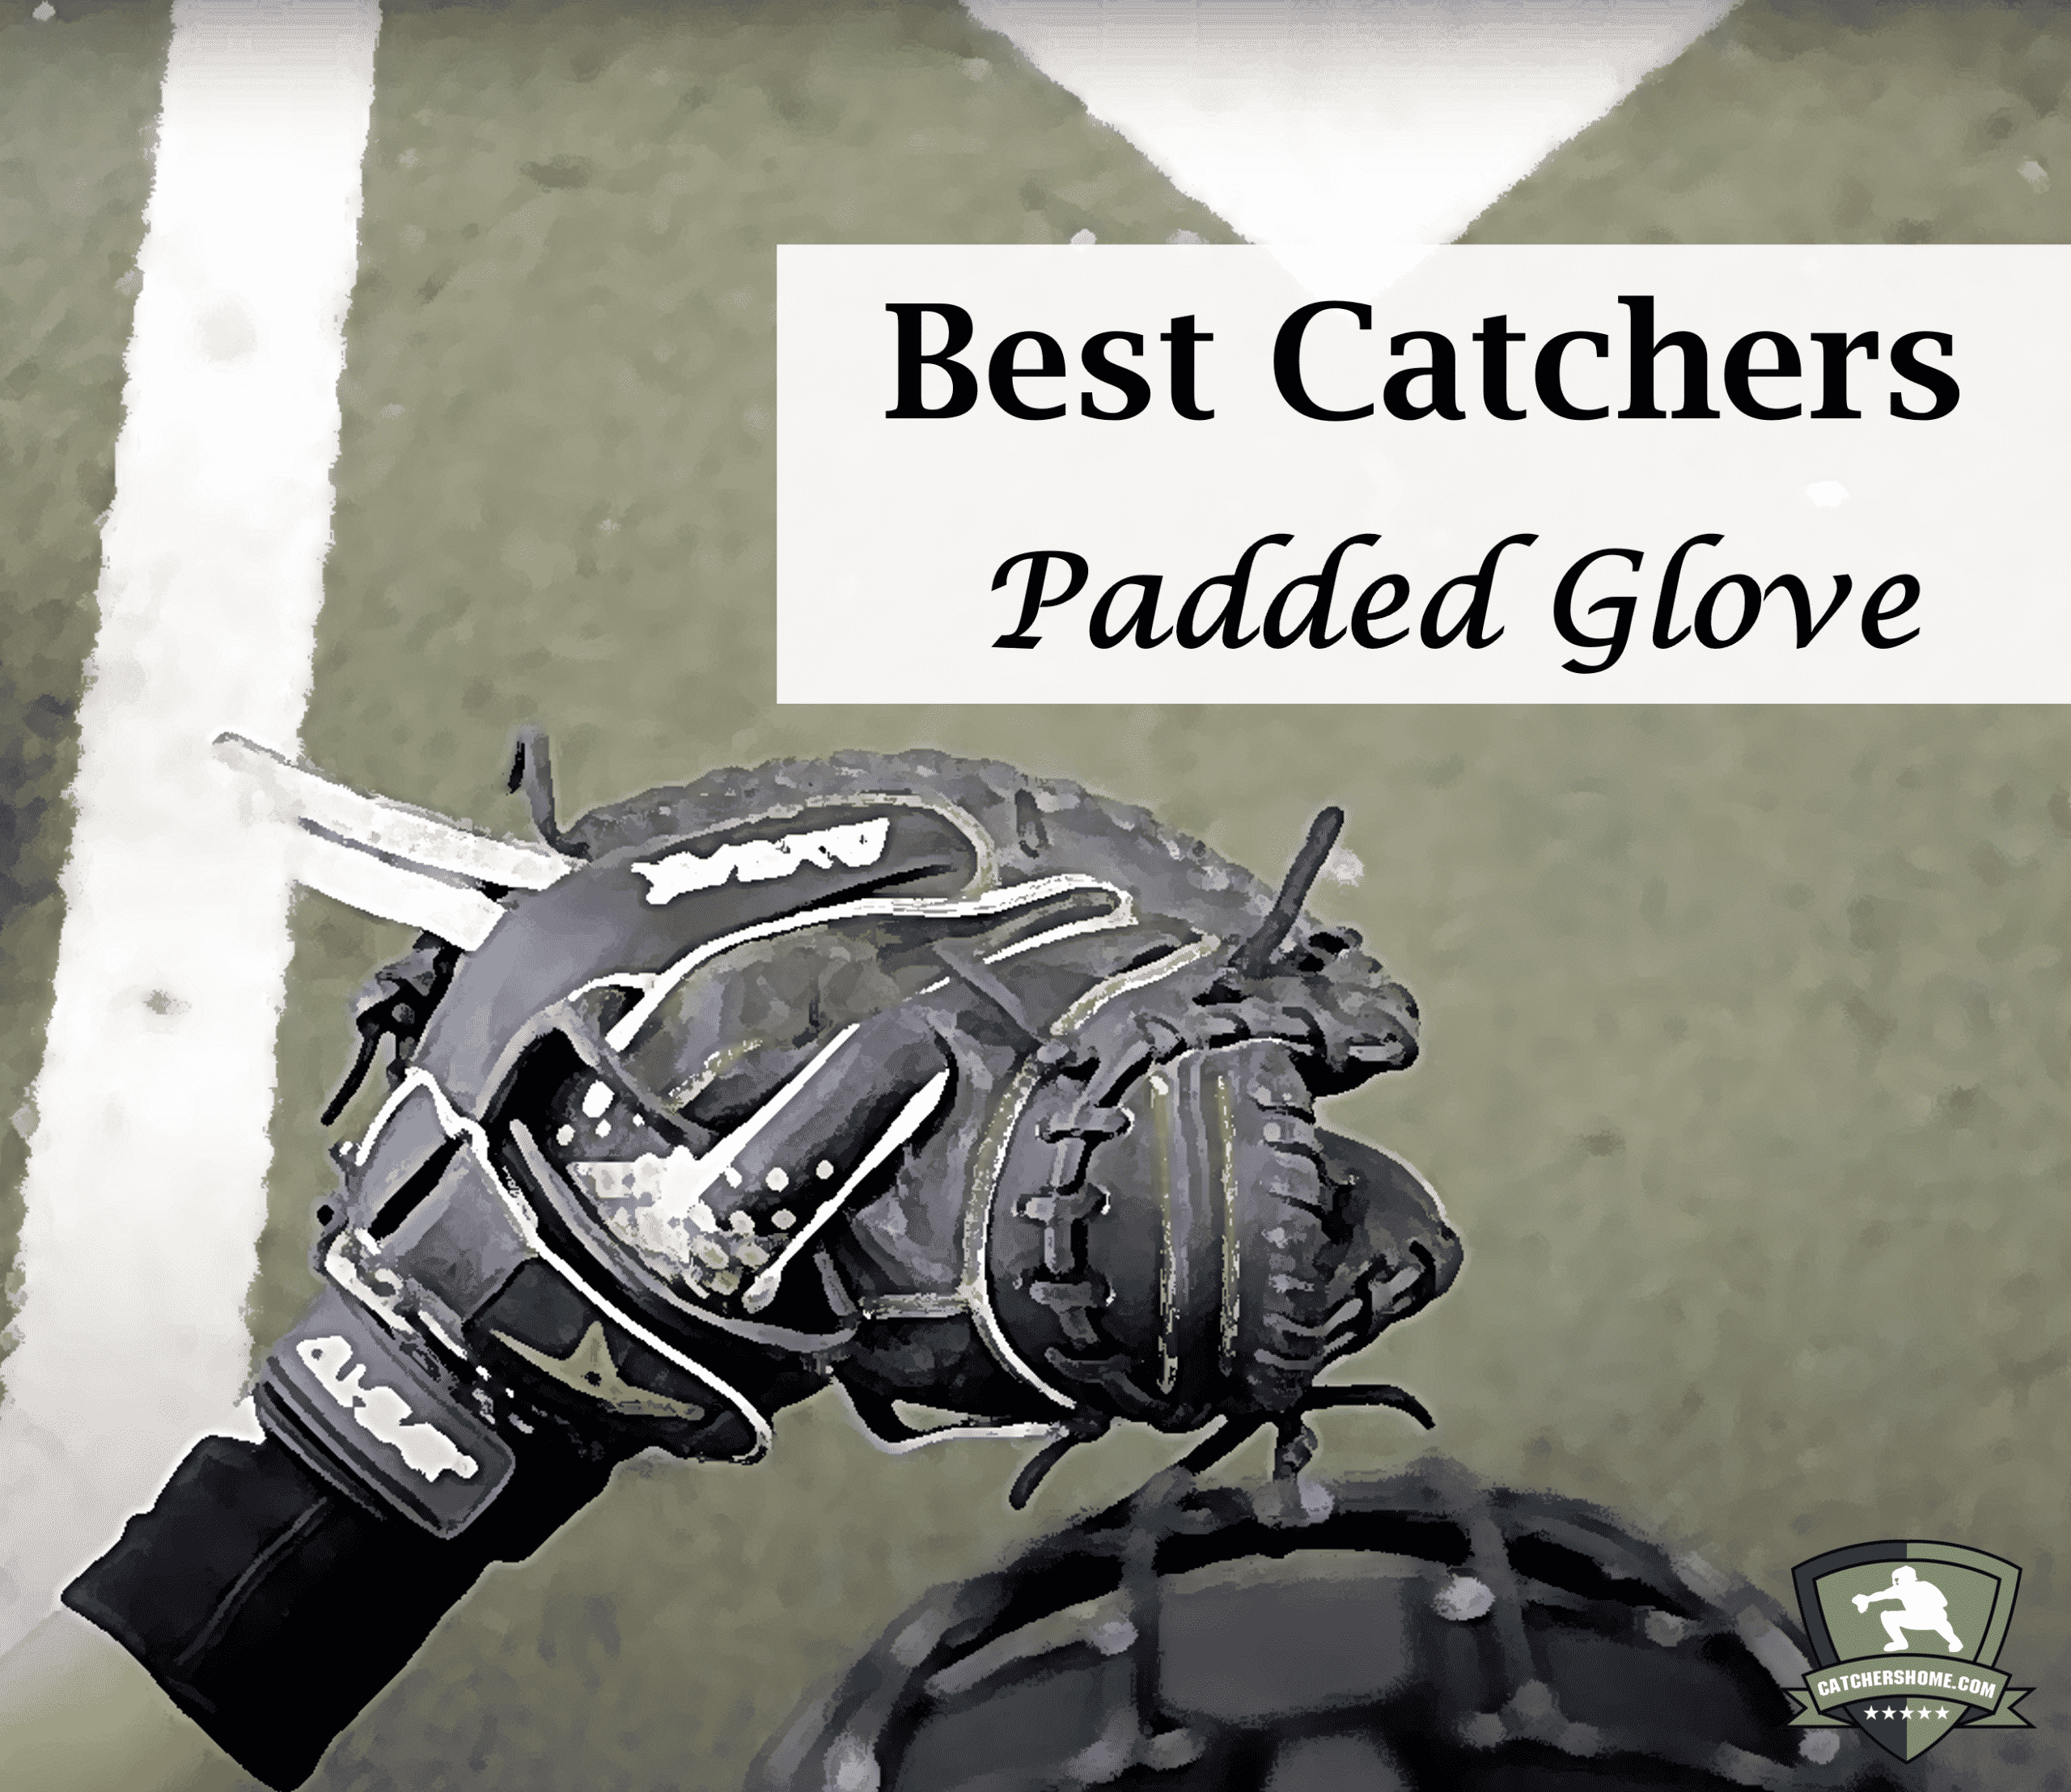 Best padded glove for catchers ultimate guide for all inner padded gloves